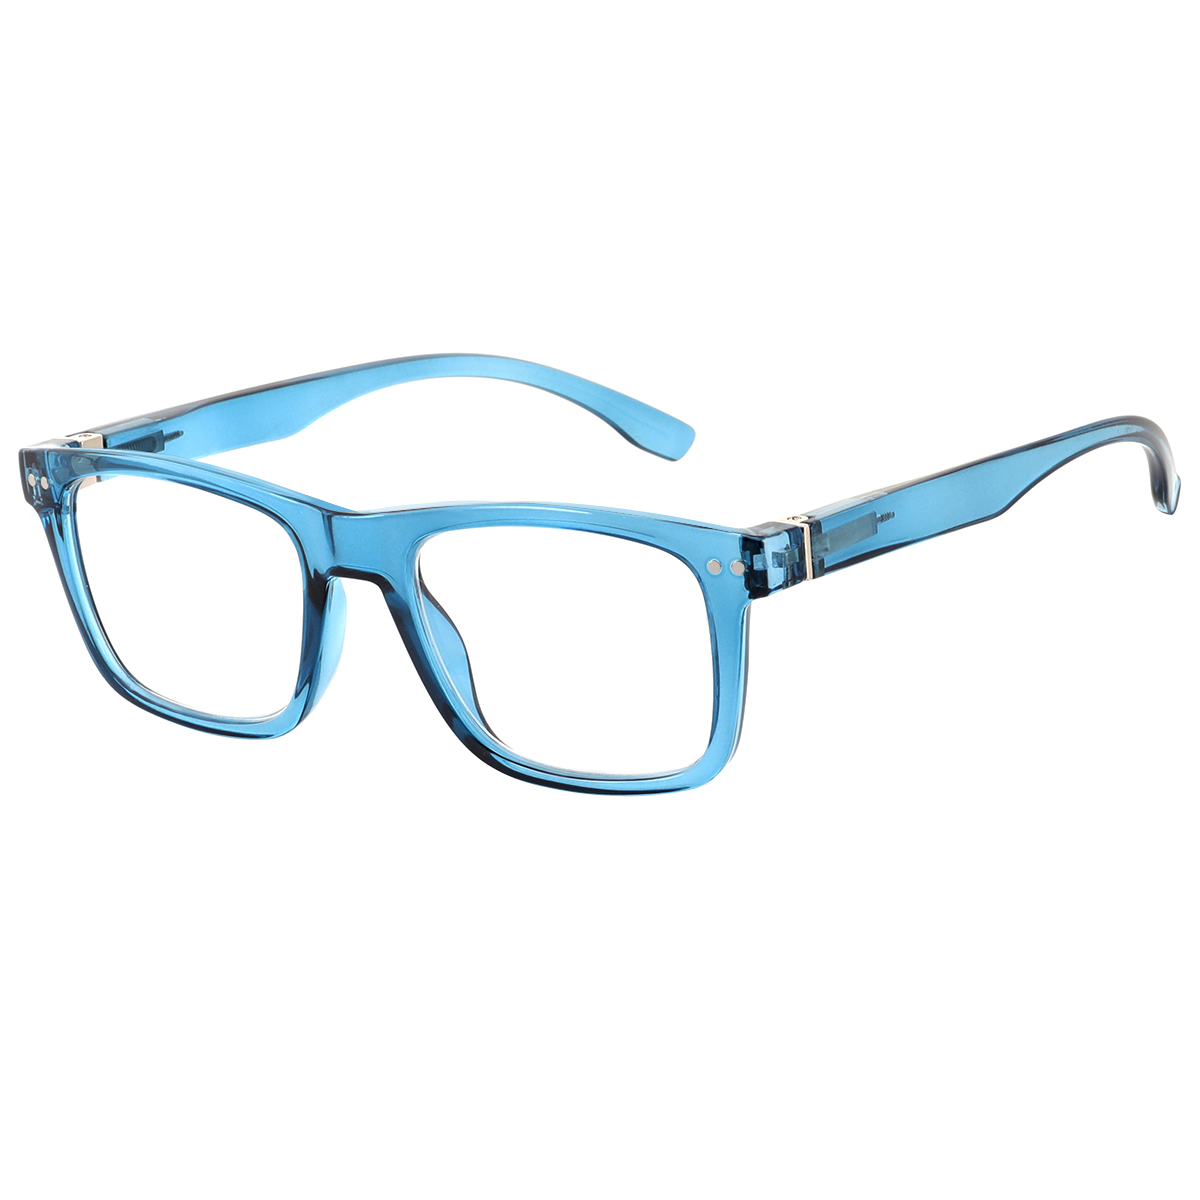 Ace - Square Blue Reading Glasses for Men & Women